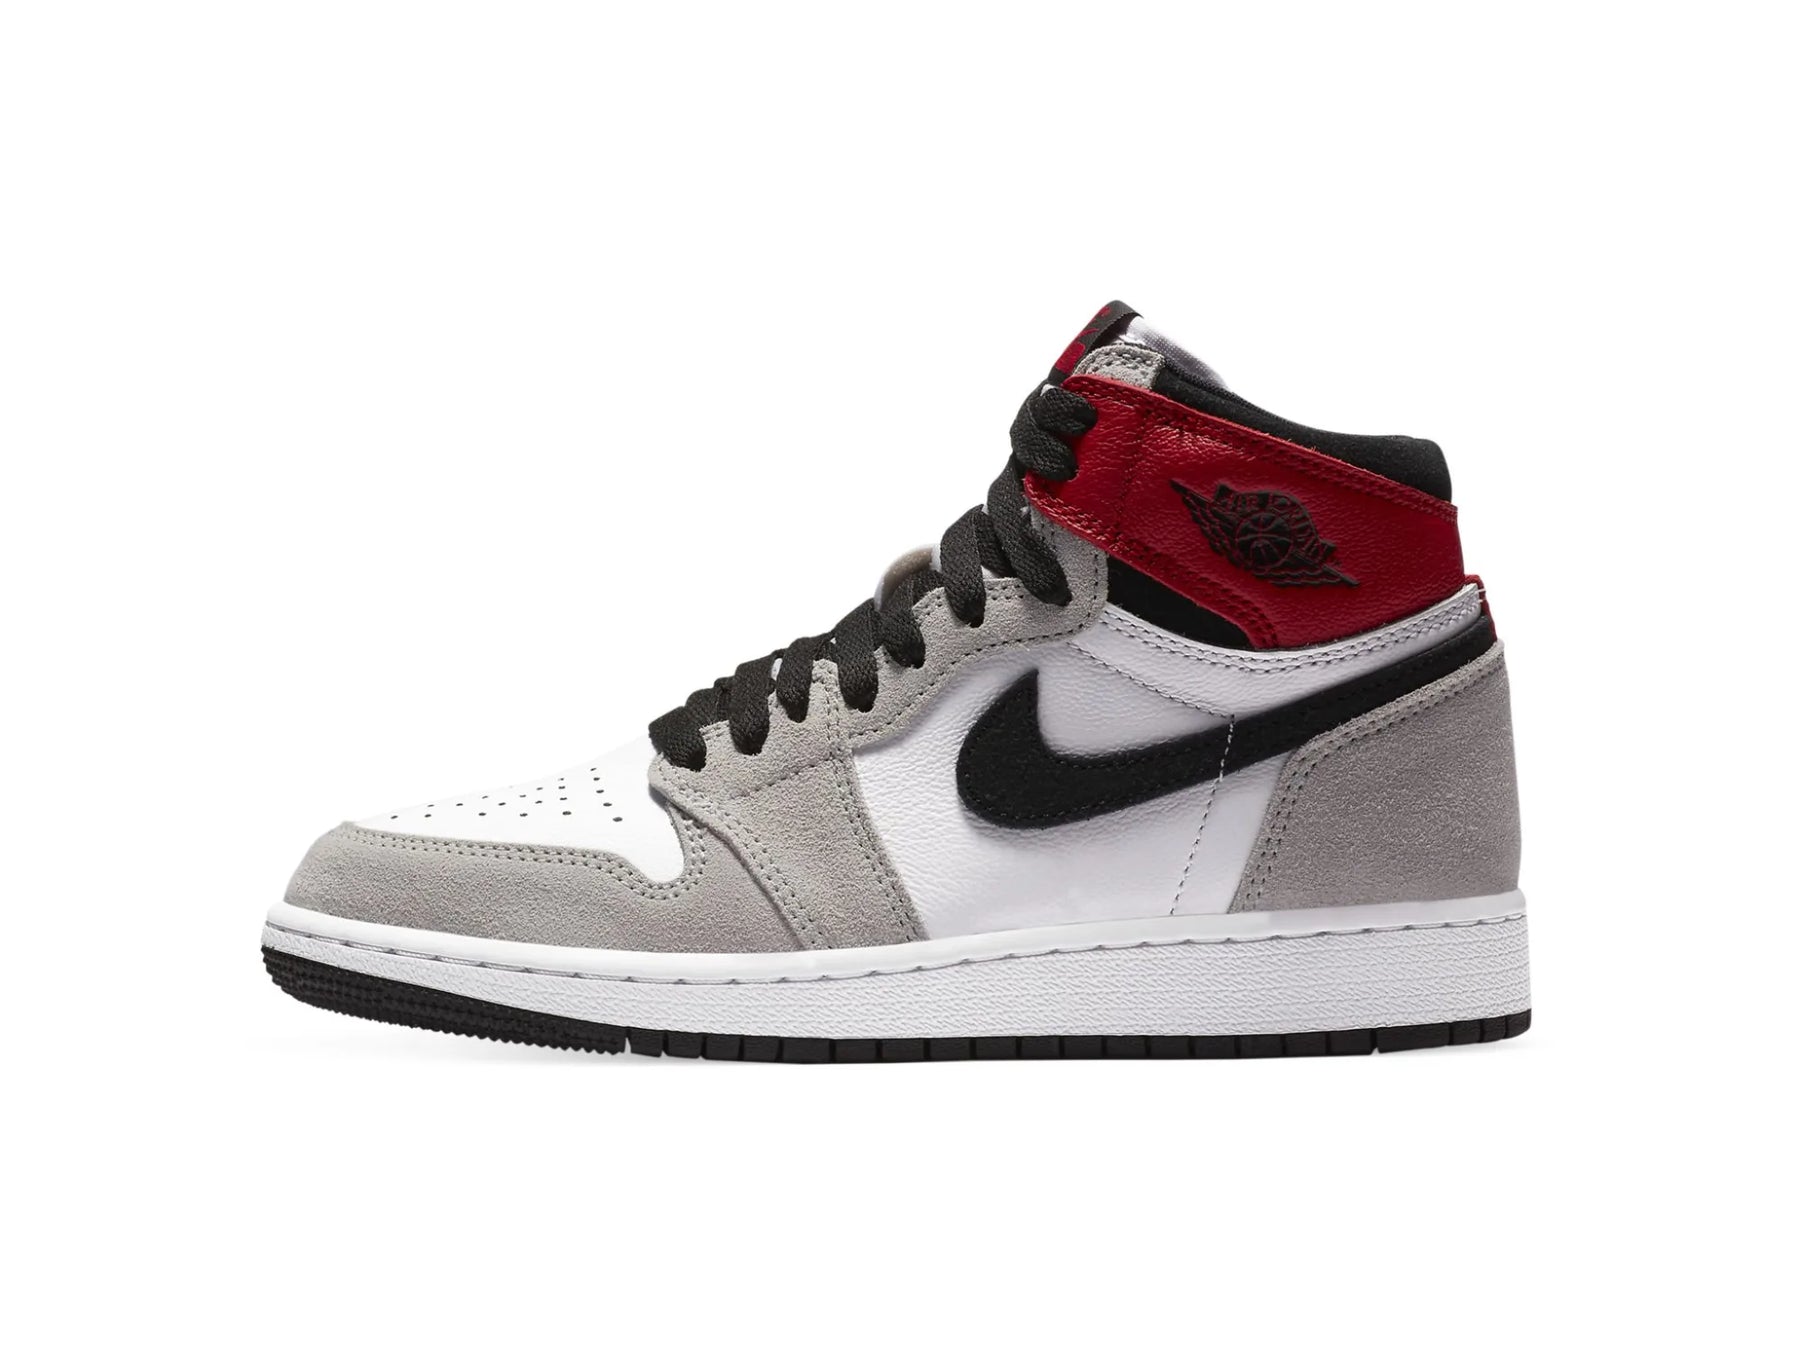 Nike Air Jordan 1 High "Smoke Grey" - street-bill.dk